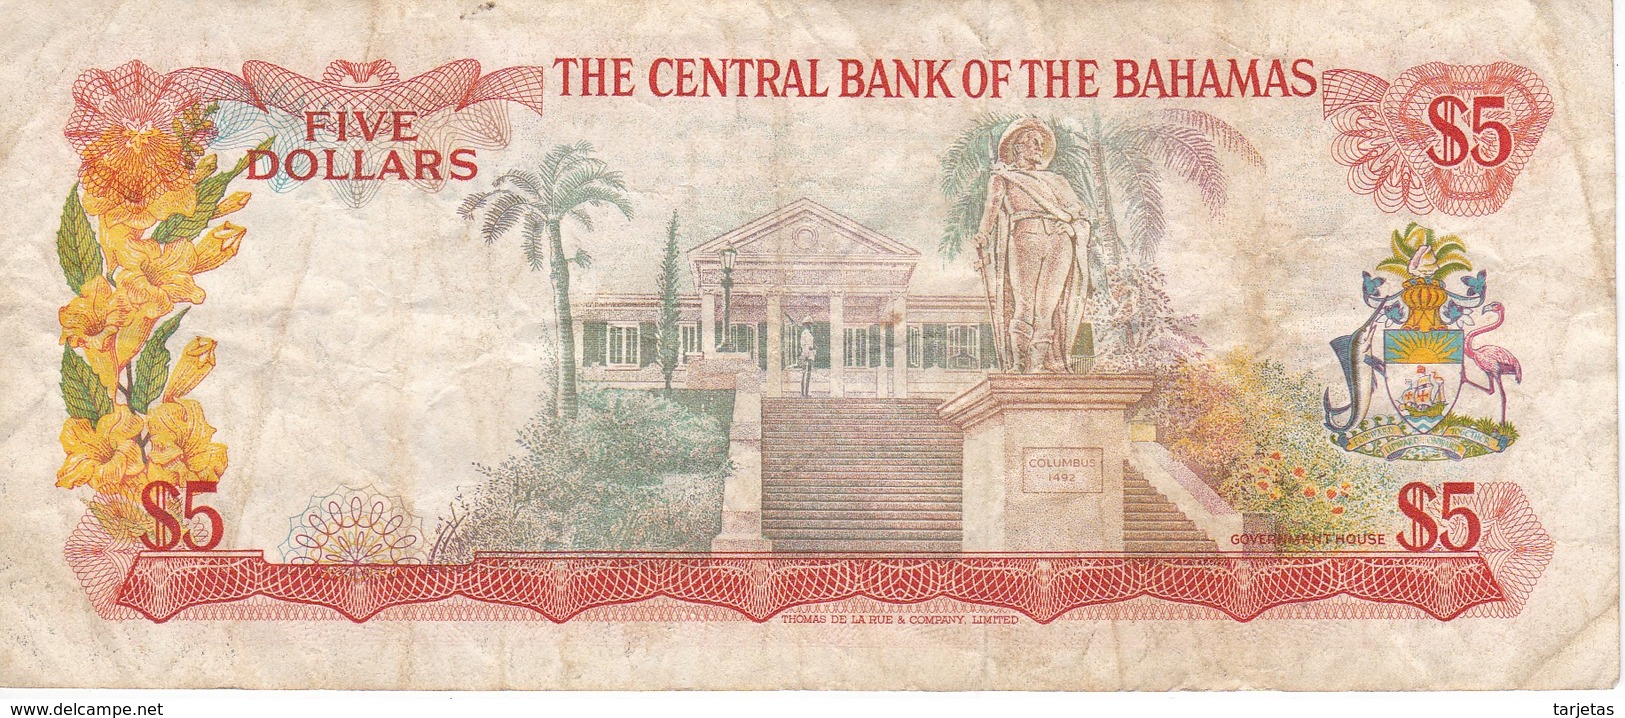 BILLETE DE BAHAMAS DE 5 DOLLARS DEL AÑO 1974  (BANKNOTE) - Bahamas